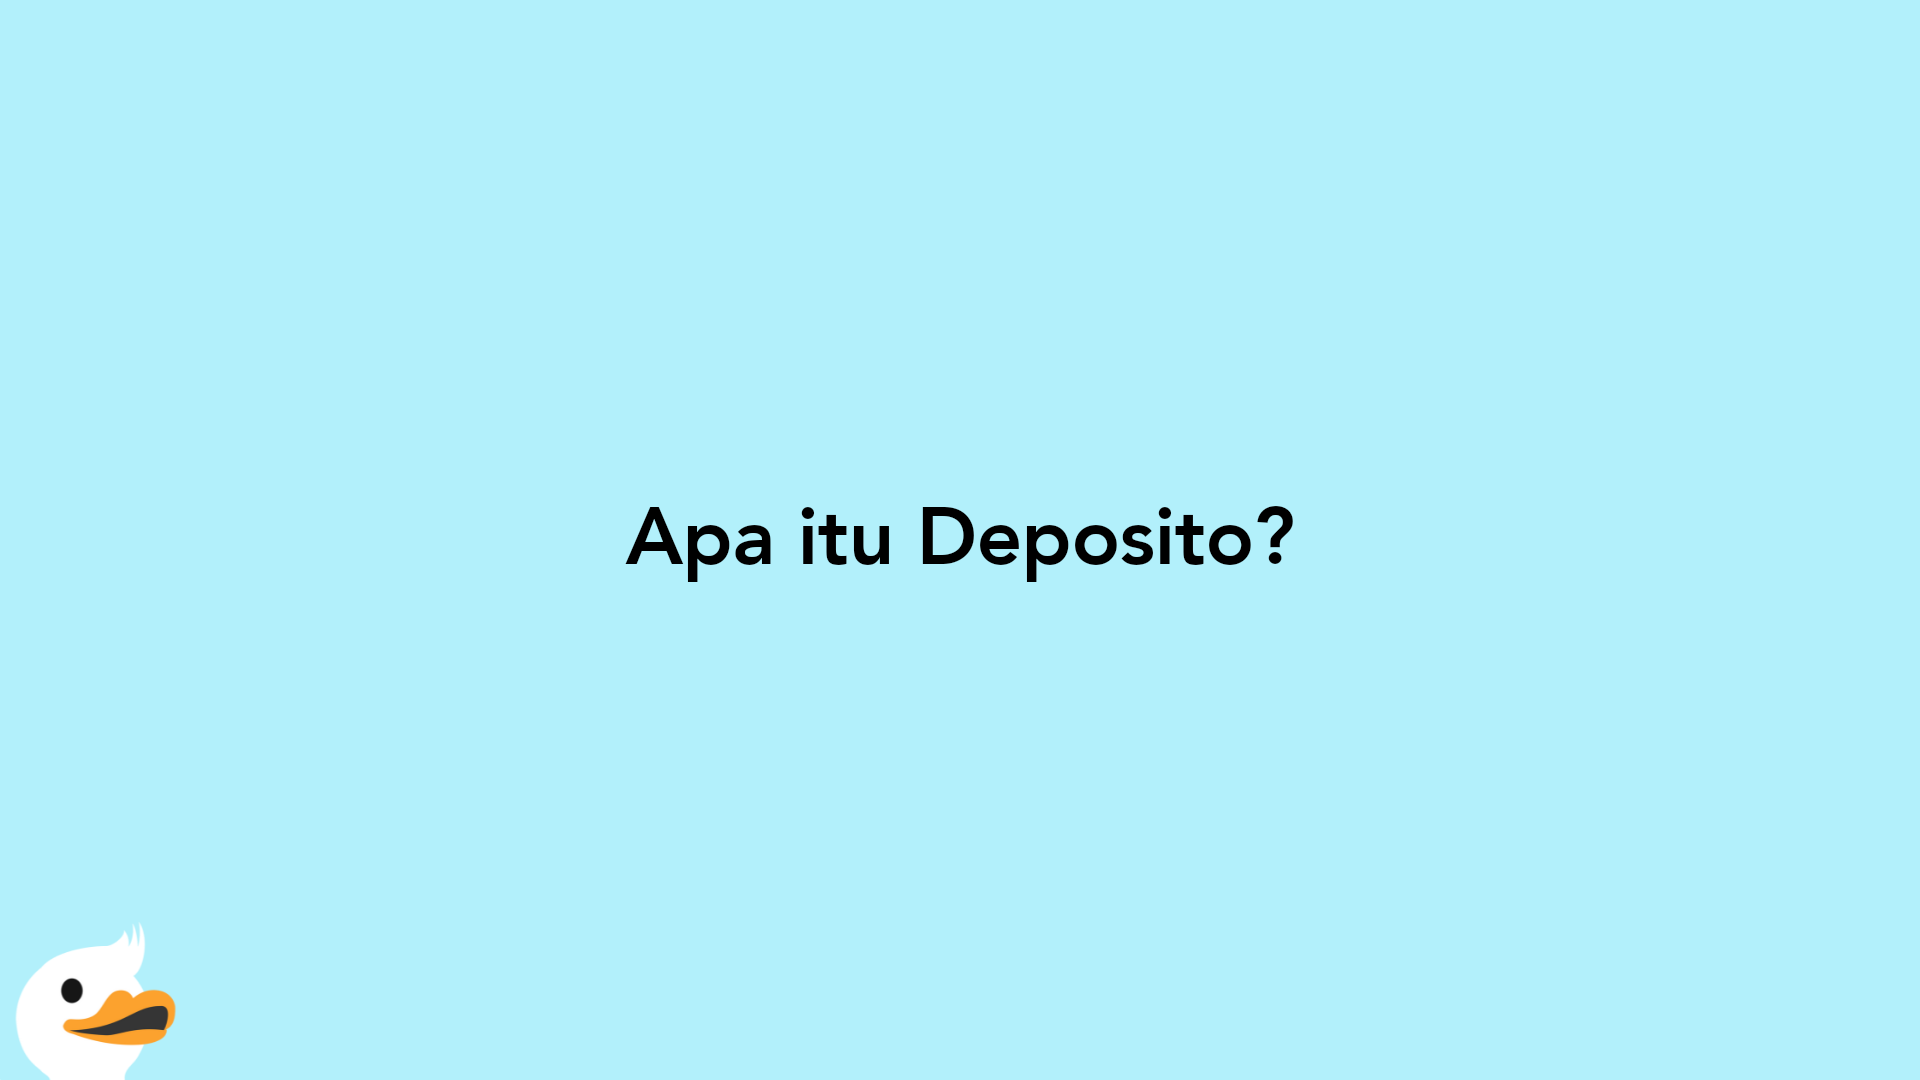 Apa itu Deposito?